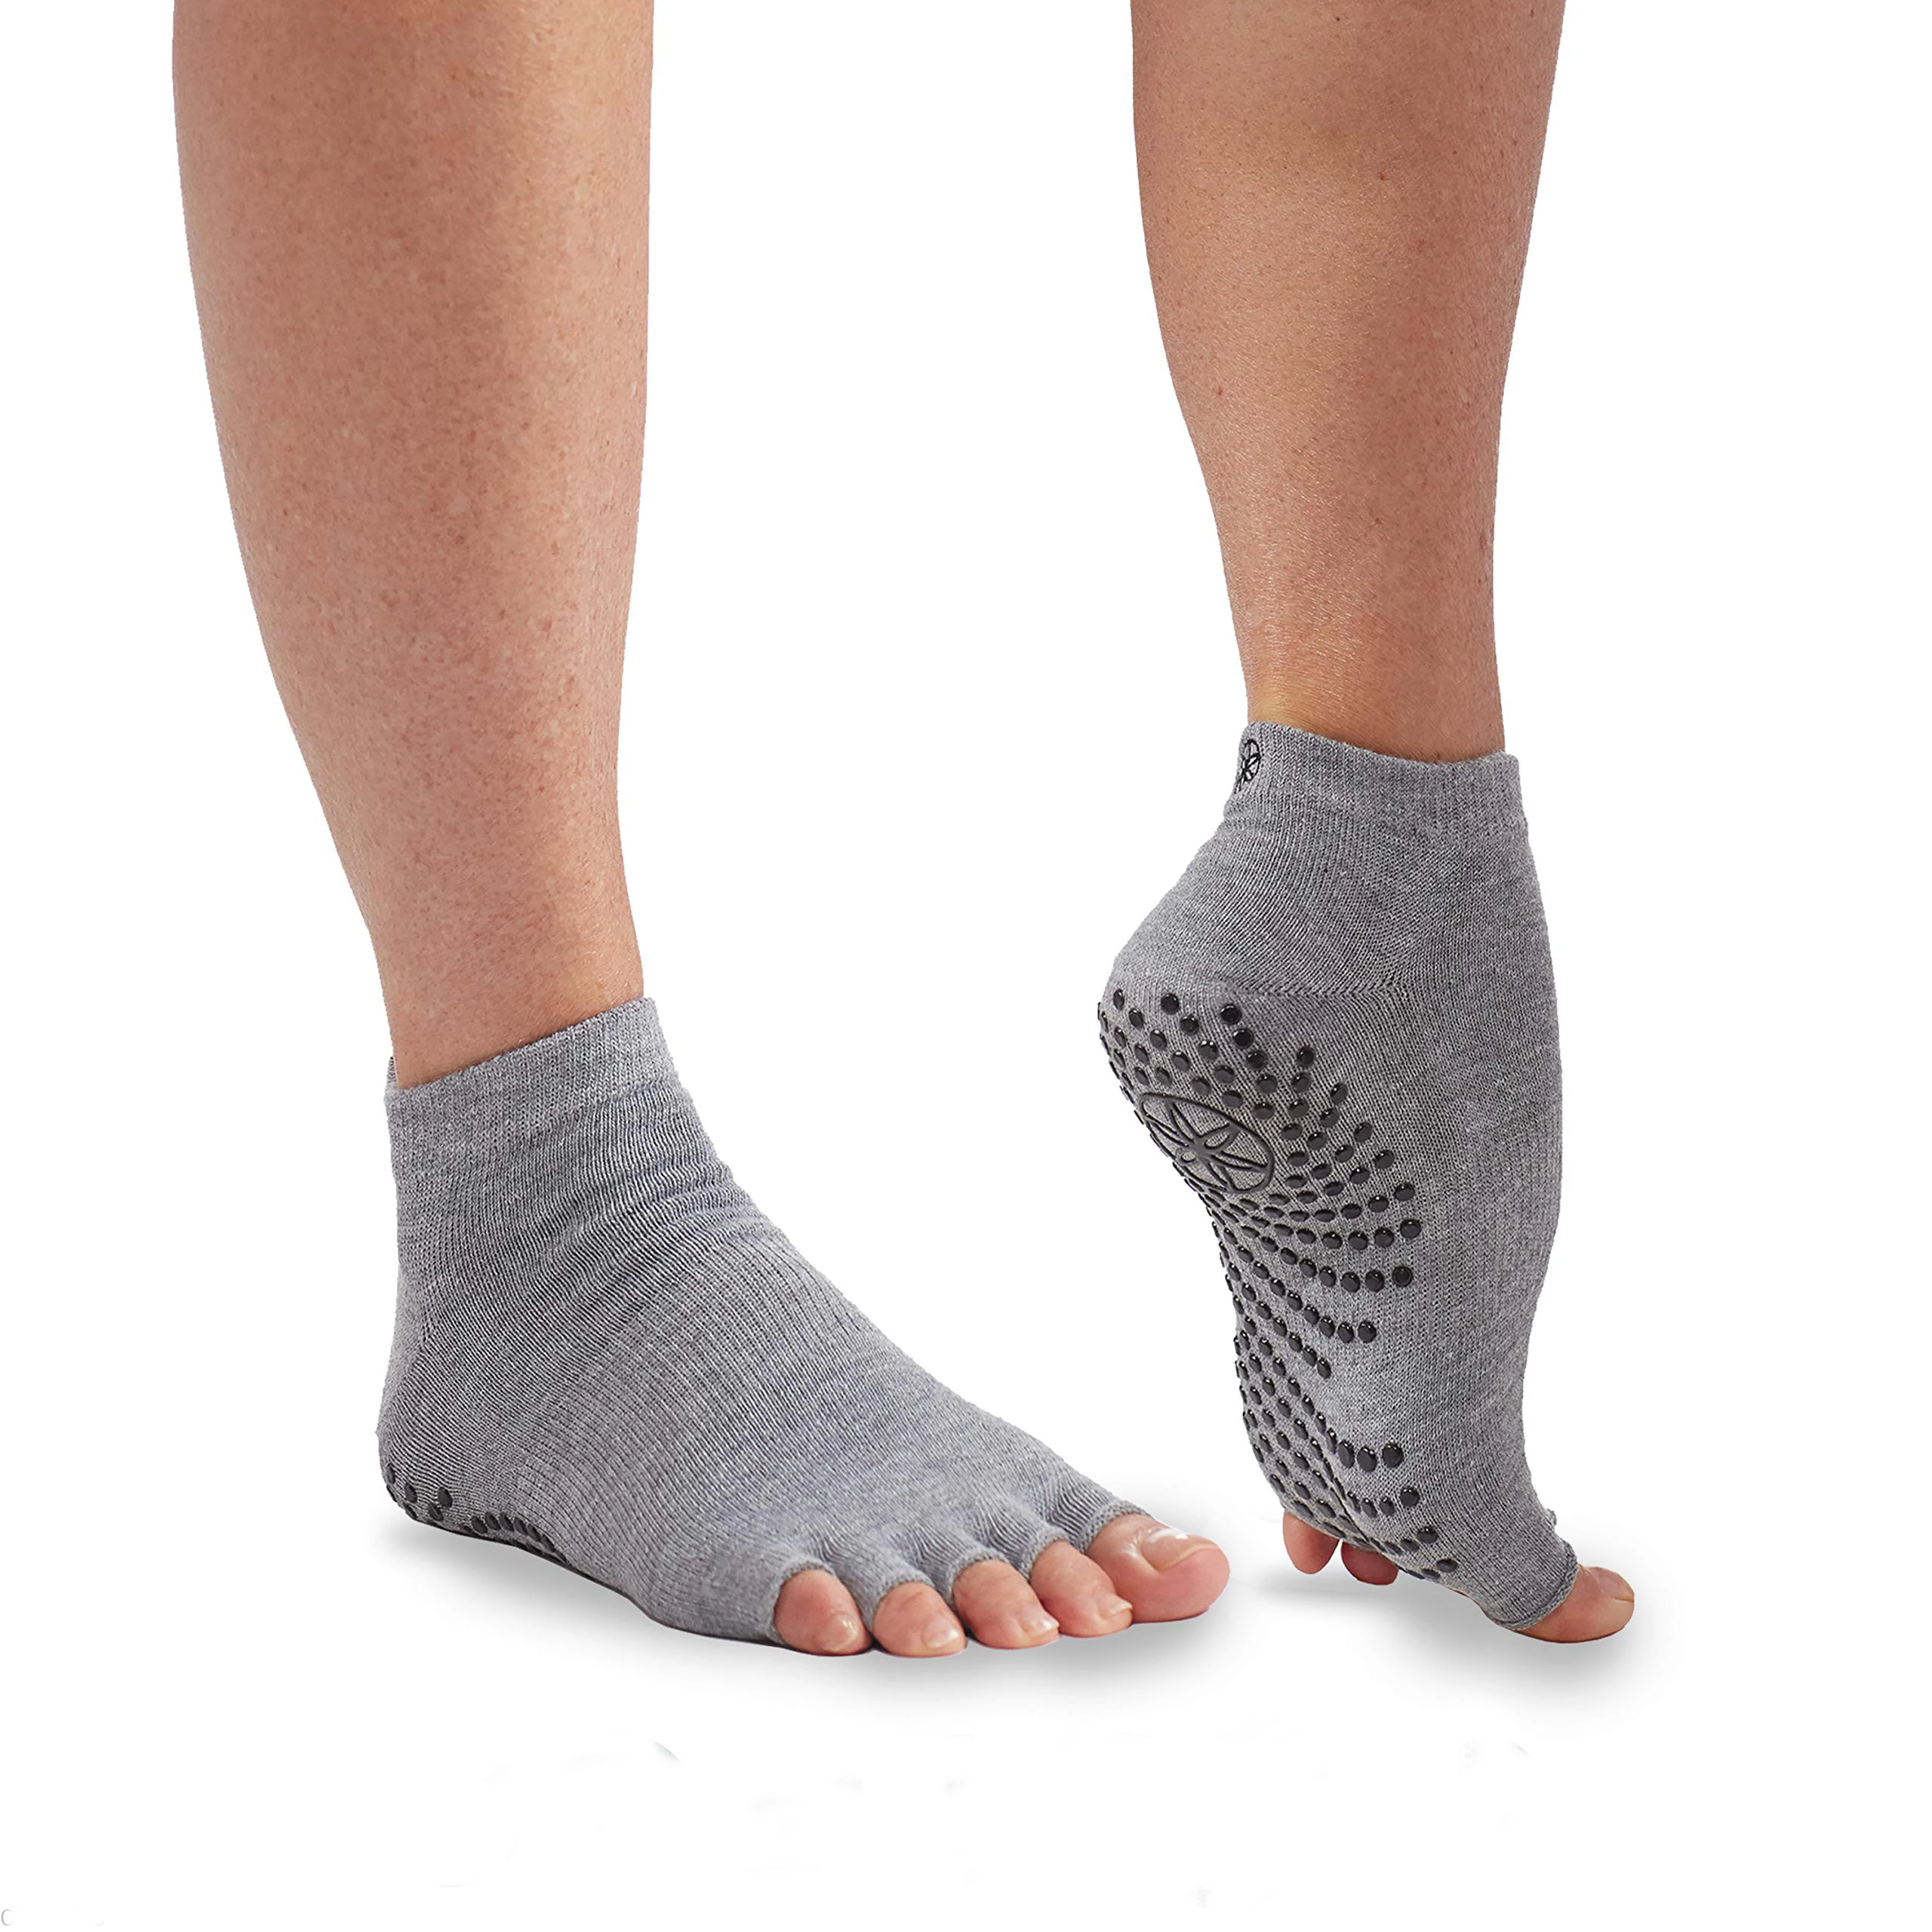 toe socks for pilates